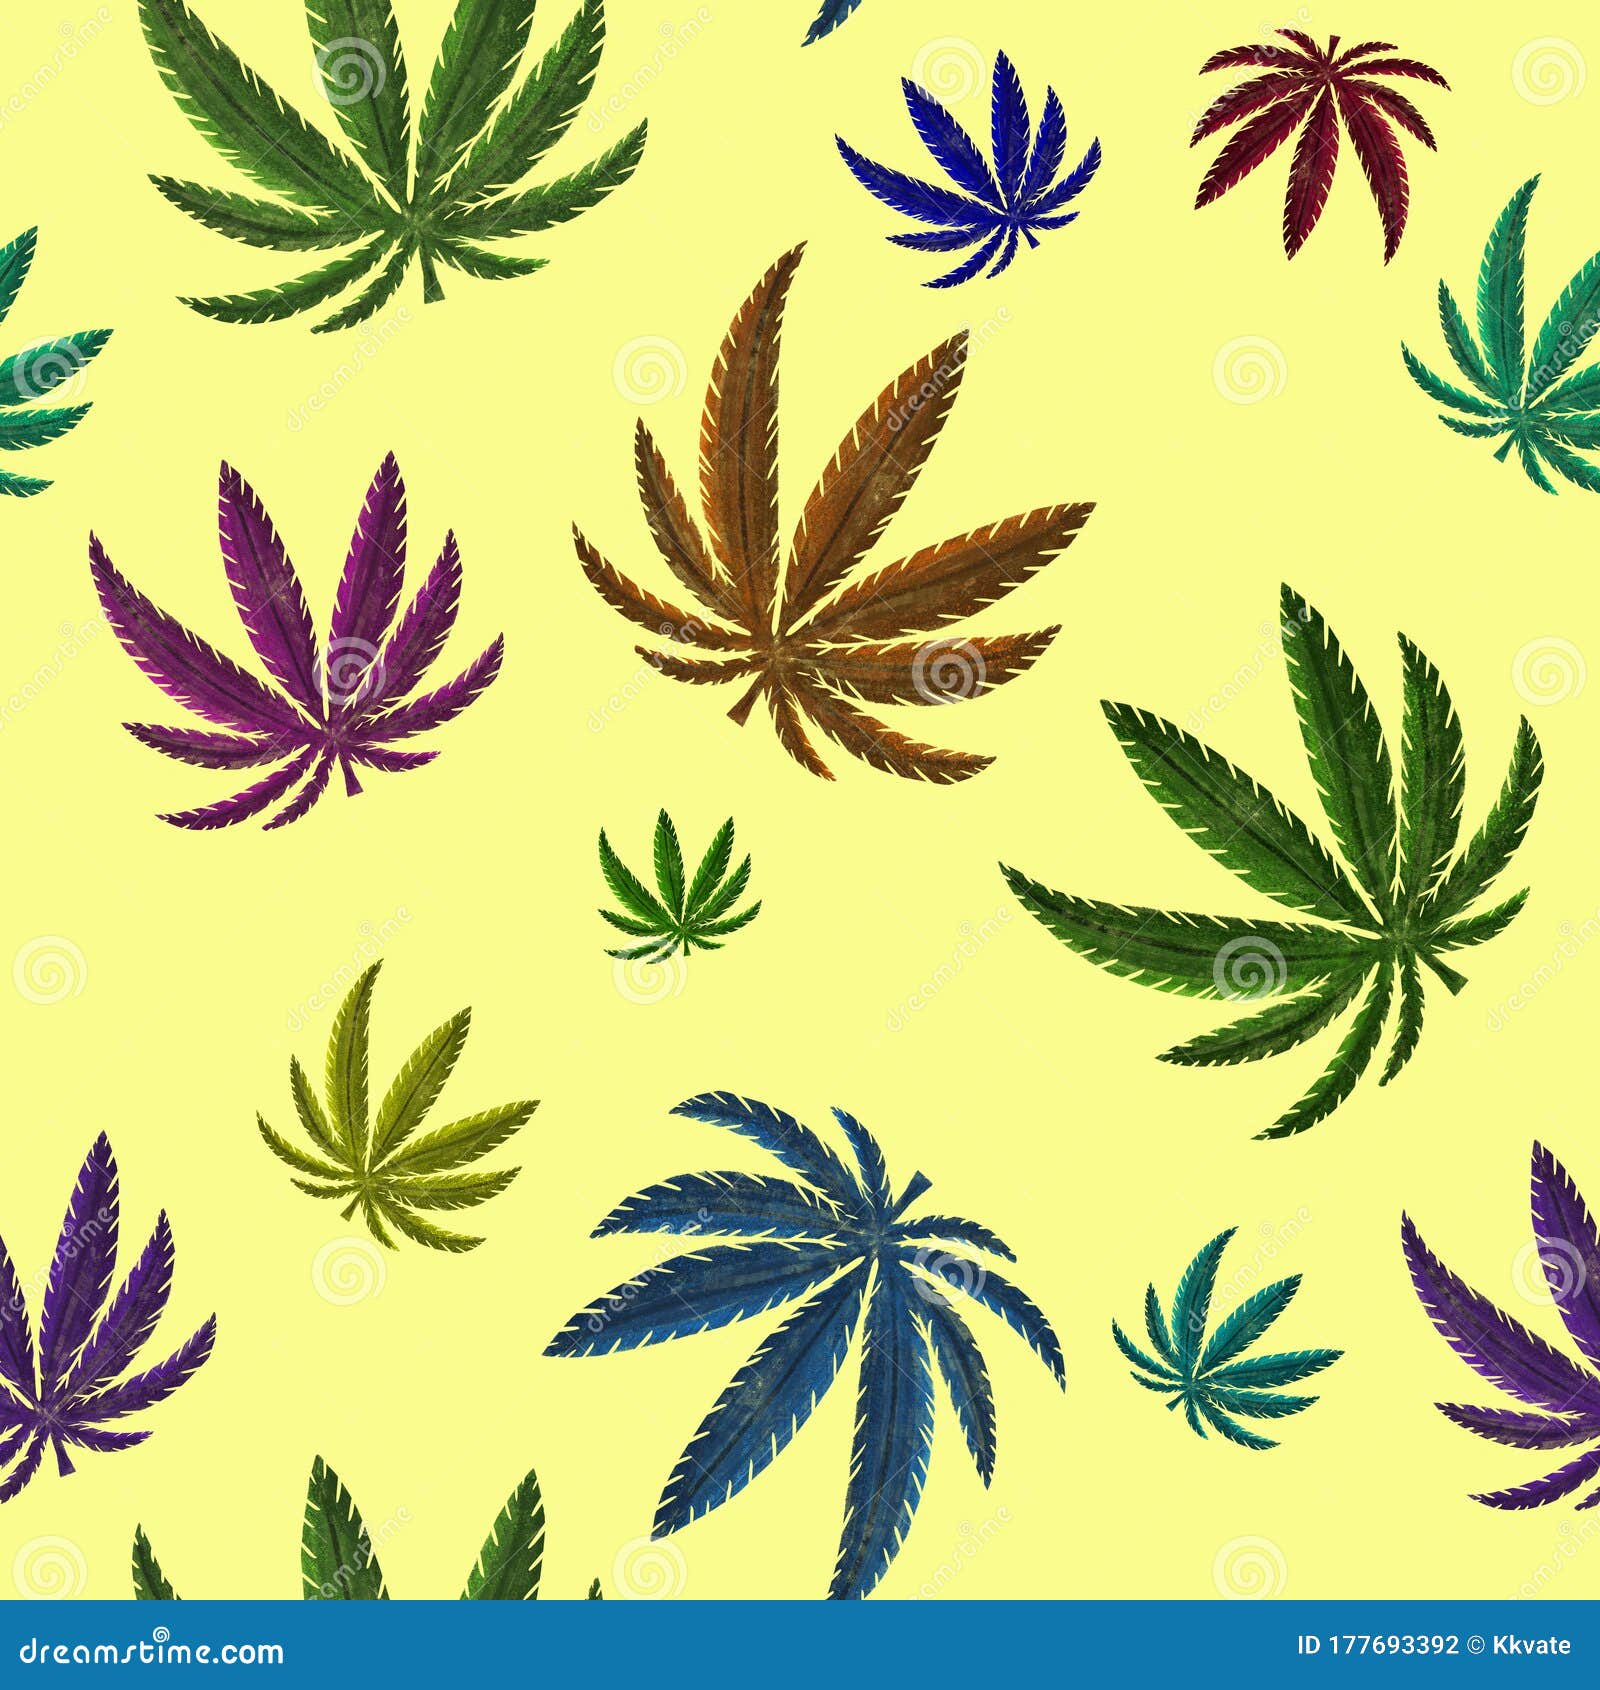 大麻，药物，特写壁纸高清原图下载,大麻，药物，特写壁纸,高清图片,壁纸-桌面城市